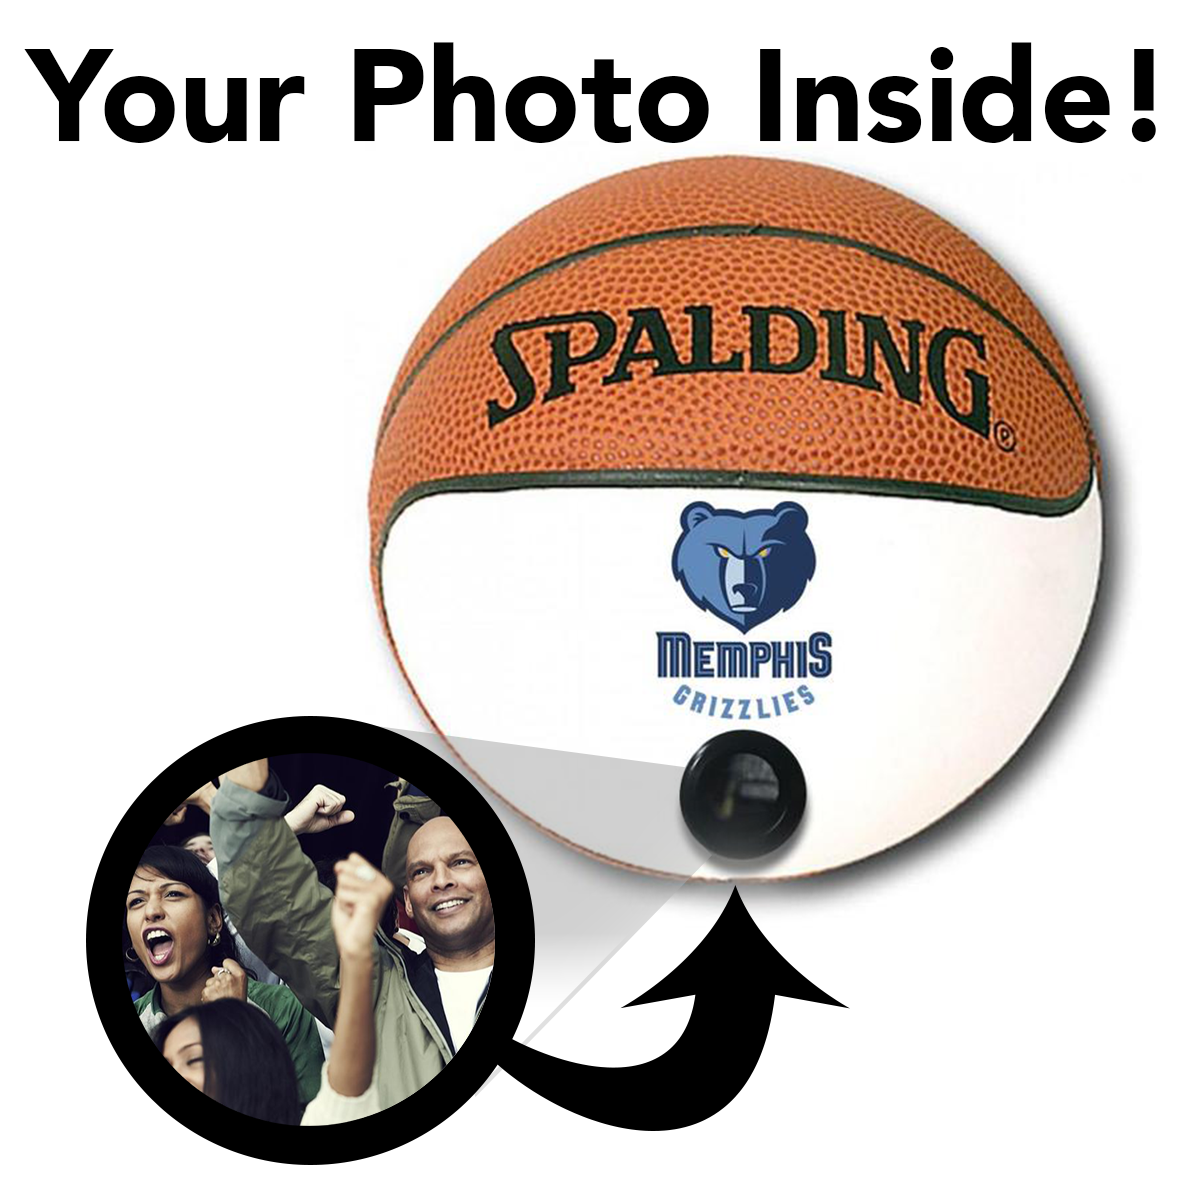 Grizzlies NBA Collectible Miniature Basketball - Picture Inside - FANZ Collectibles - Fanz Collectibles